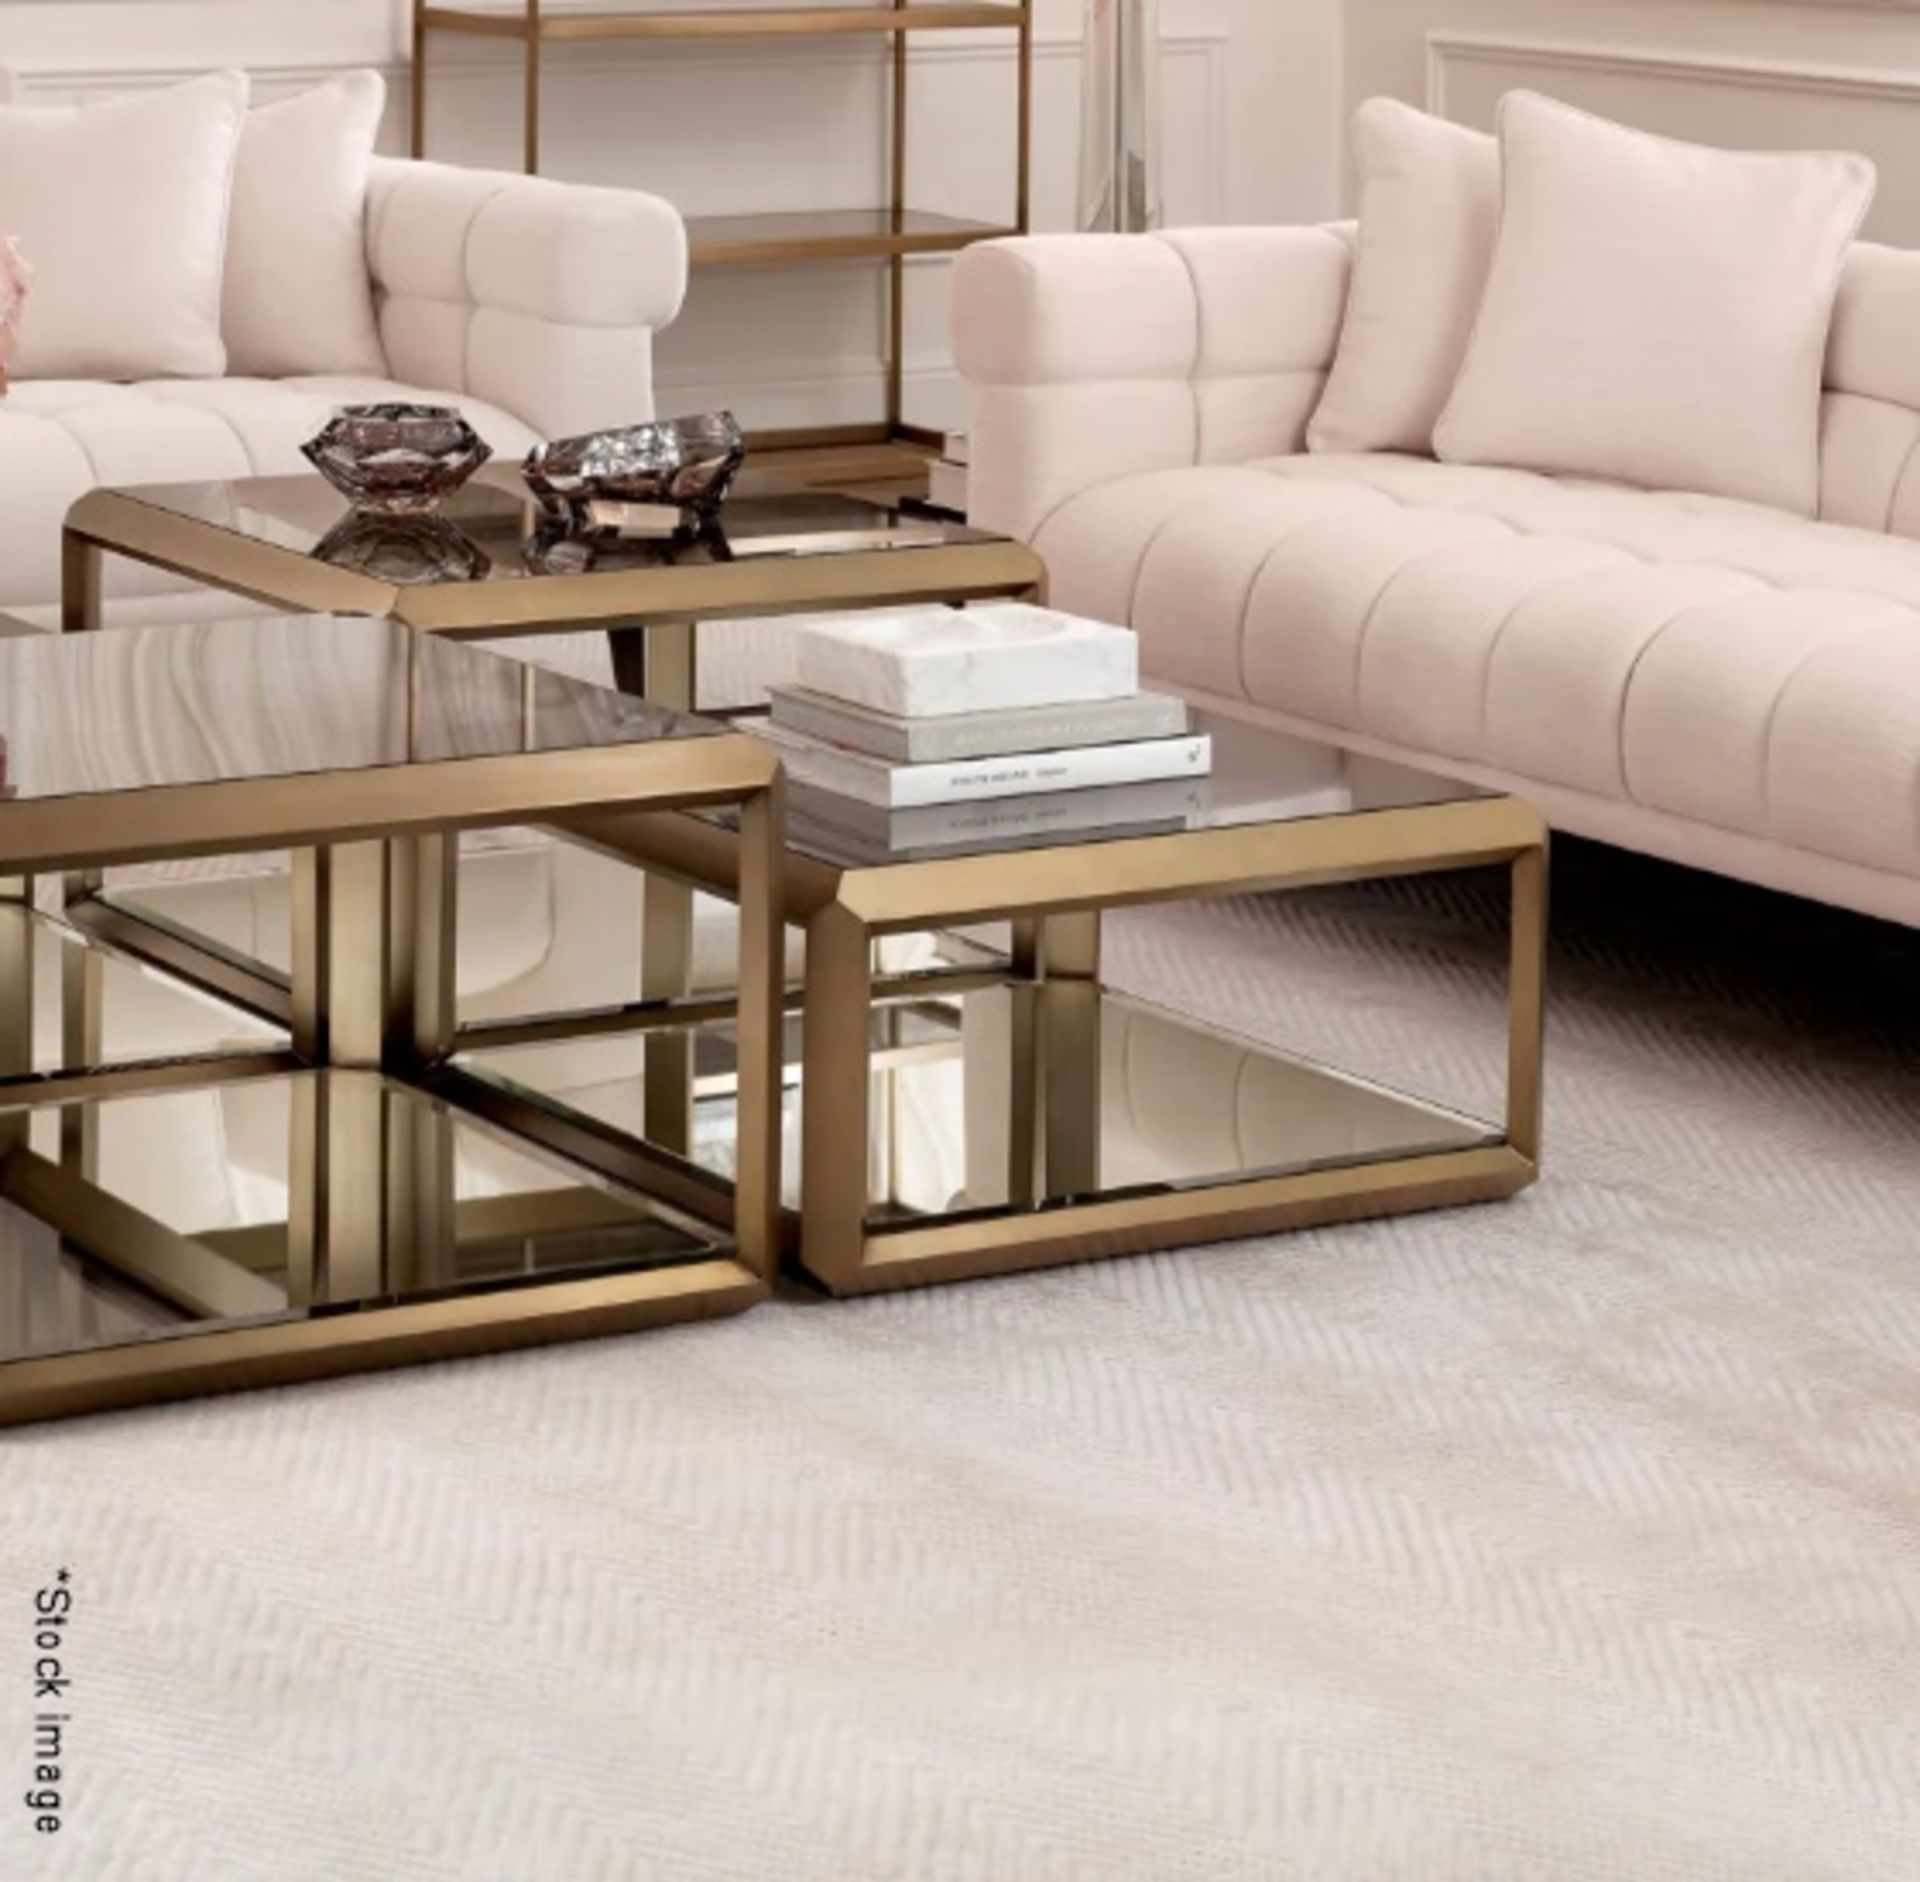 1 x EICHHOLTZ Luxury Handwoven Herringbone Carpet Rug, 200 x 300cm - Original Price £1,886